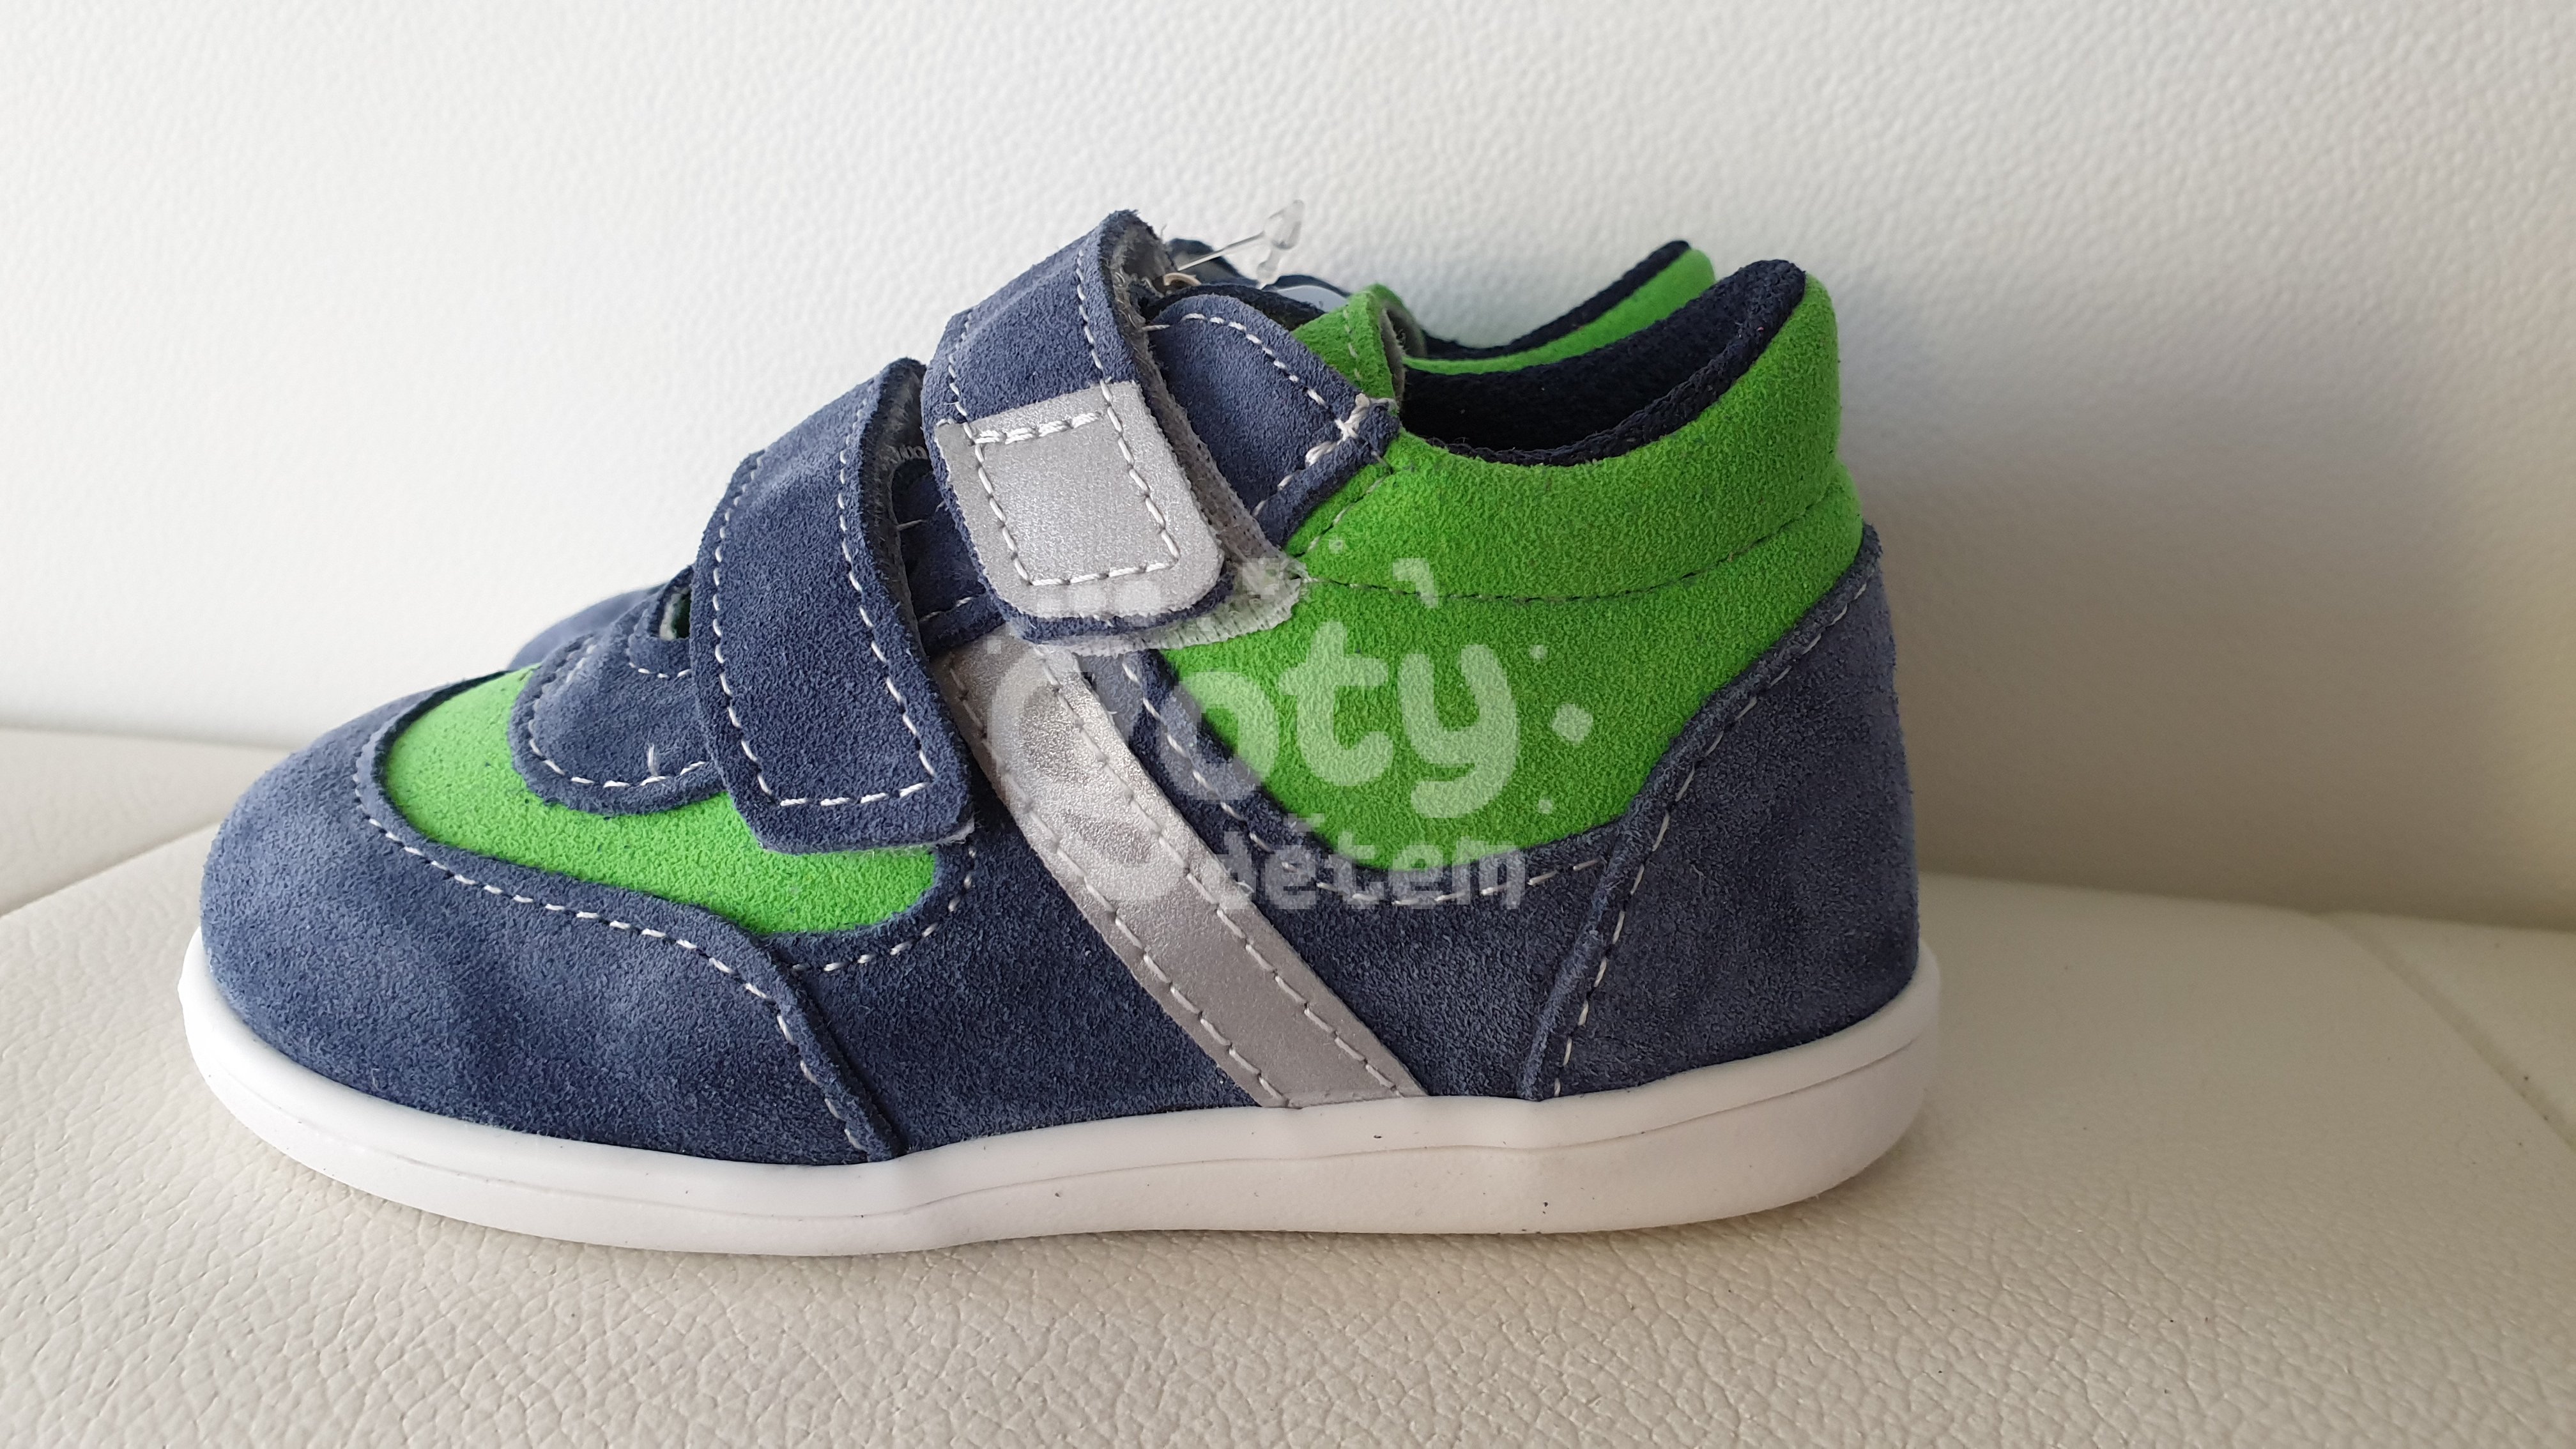 Jonap kožené boty 051SV light modrá zelená